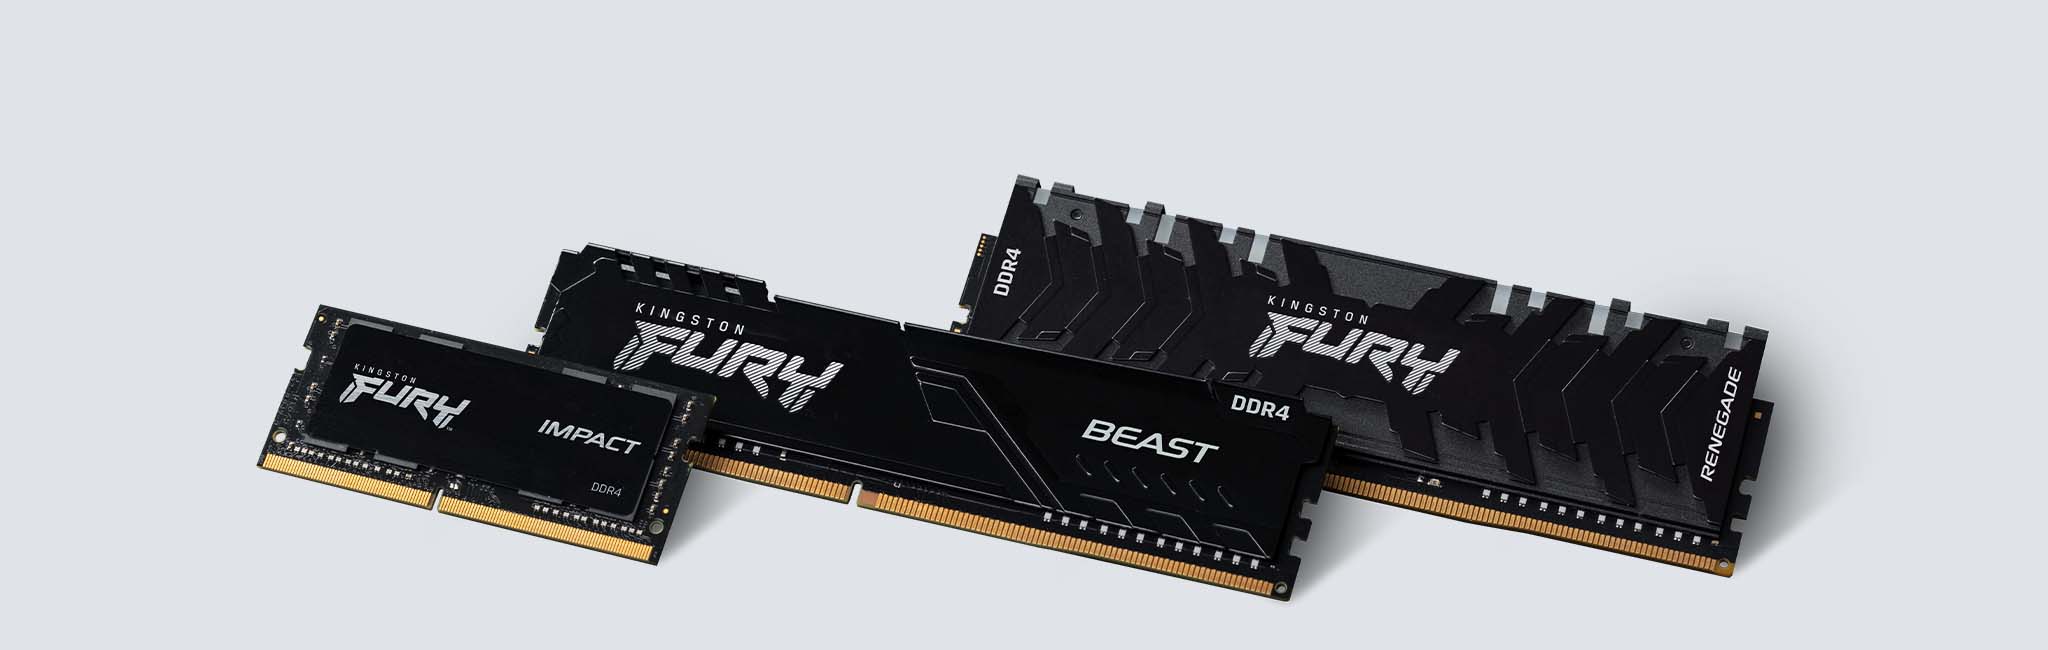 Más información acerca de productos de memoria DDR5 